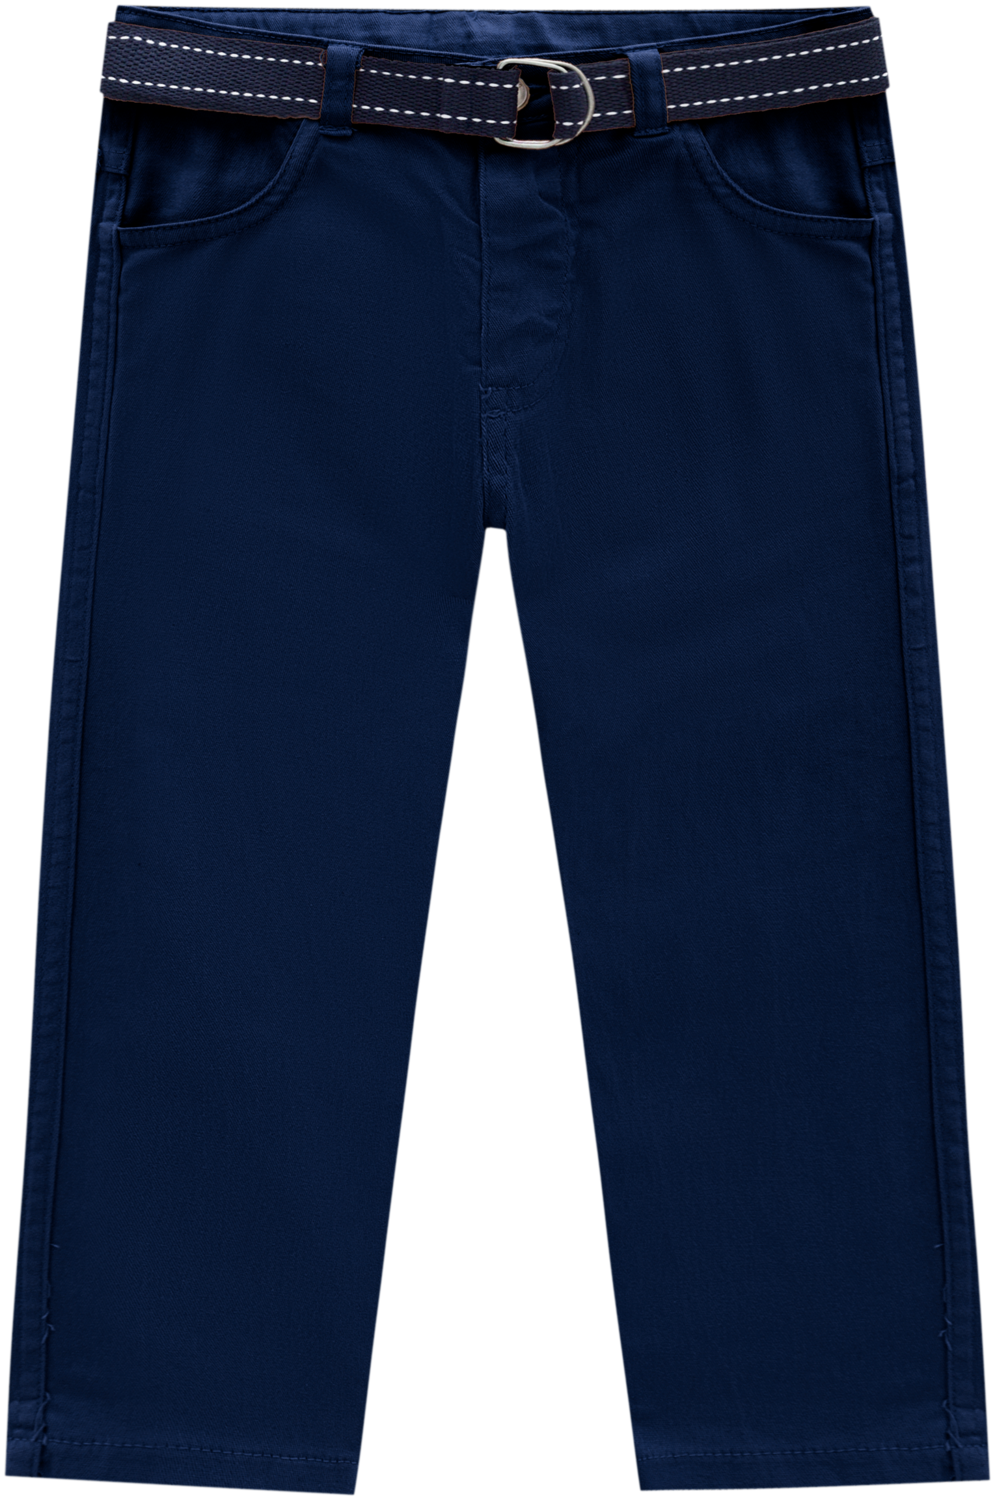 Milon Boys Blue/Navy Pants 791